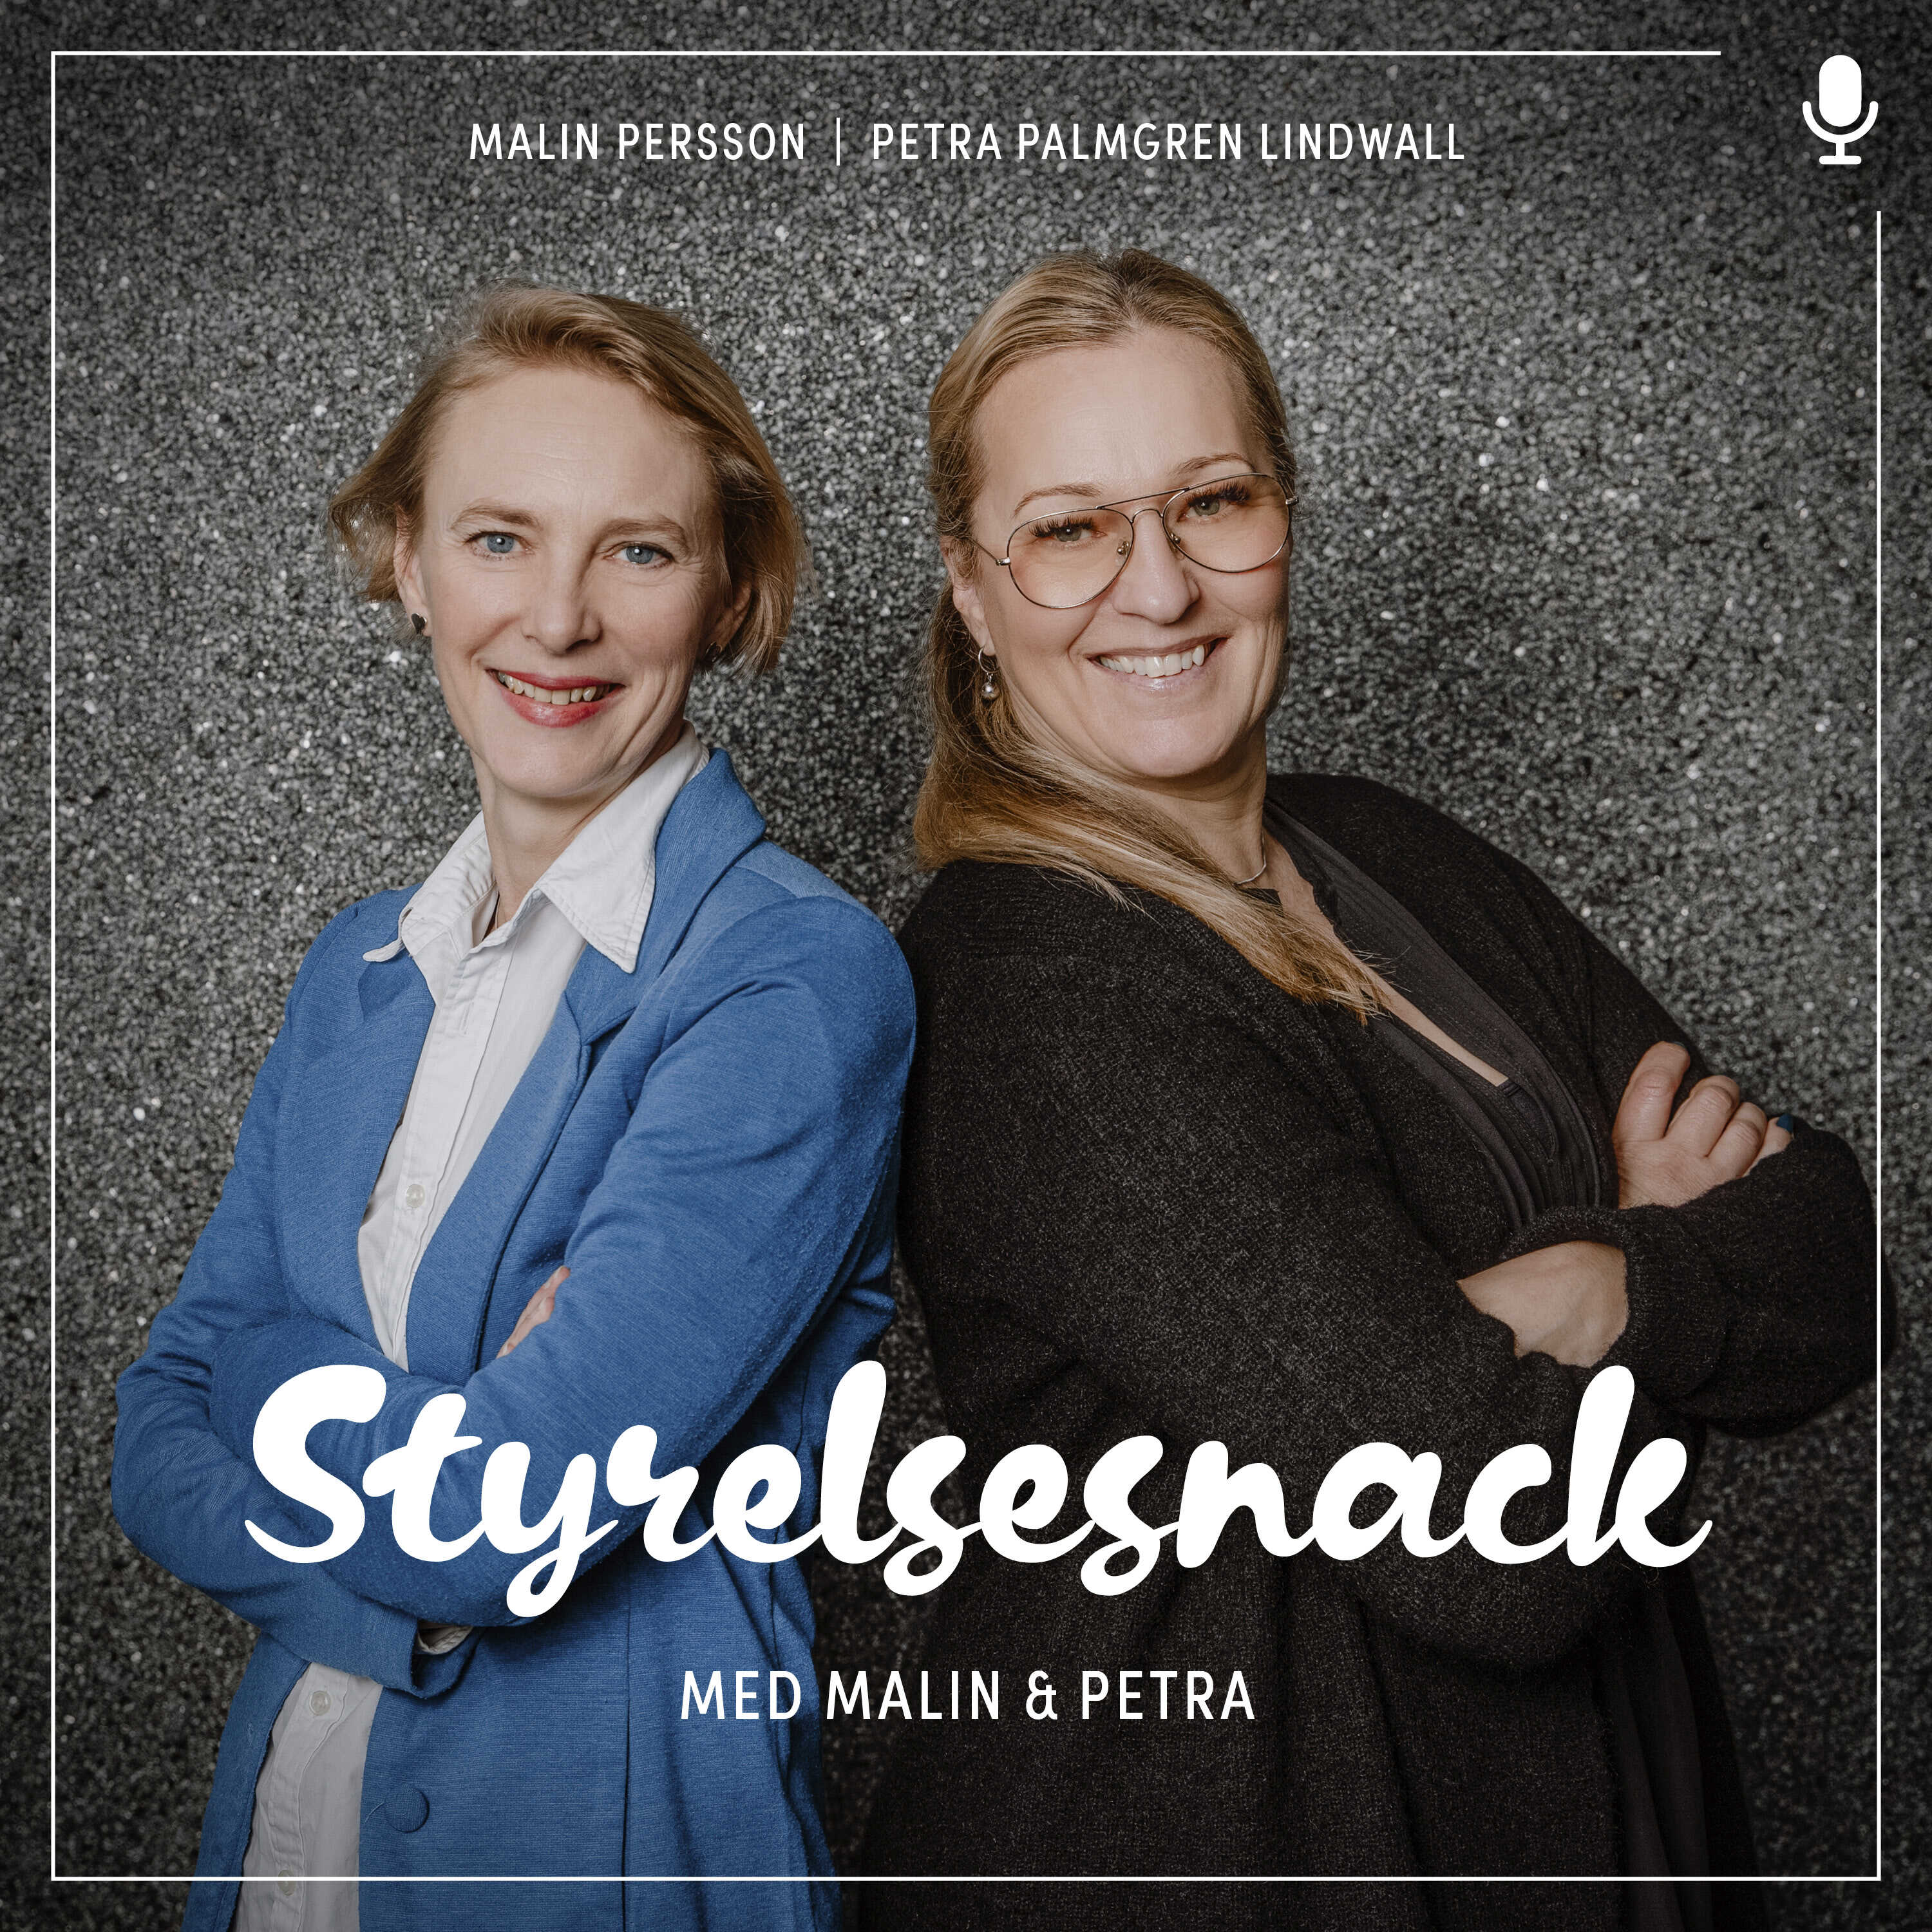 Mikal Björkström & Ola Rosenlind - förändringens fem fallgropar!